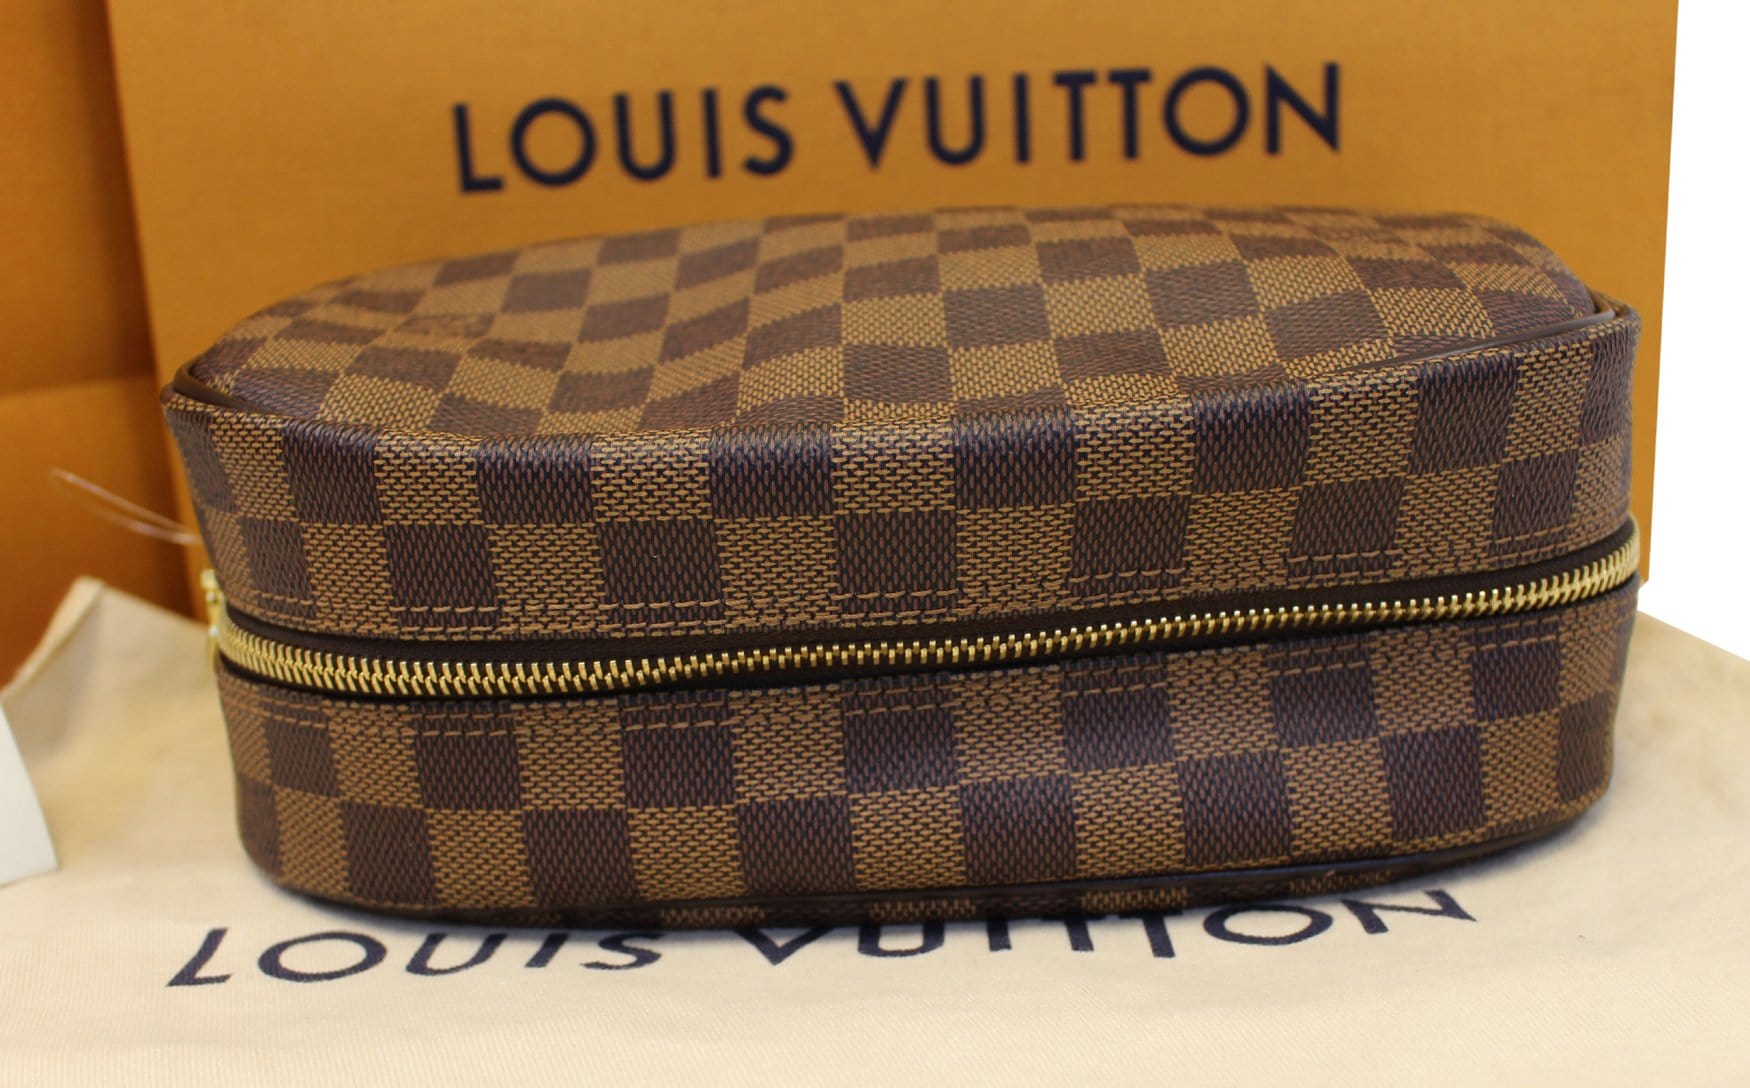 Authentic Louis Vuitton Damier Ebene Cosmetic Pouch – Paris